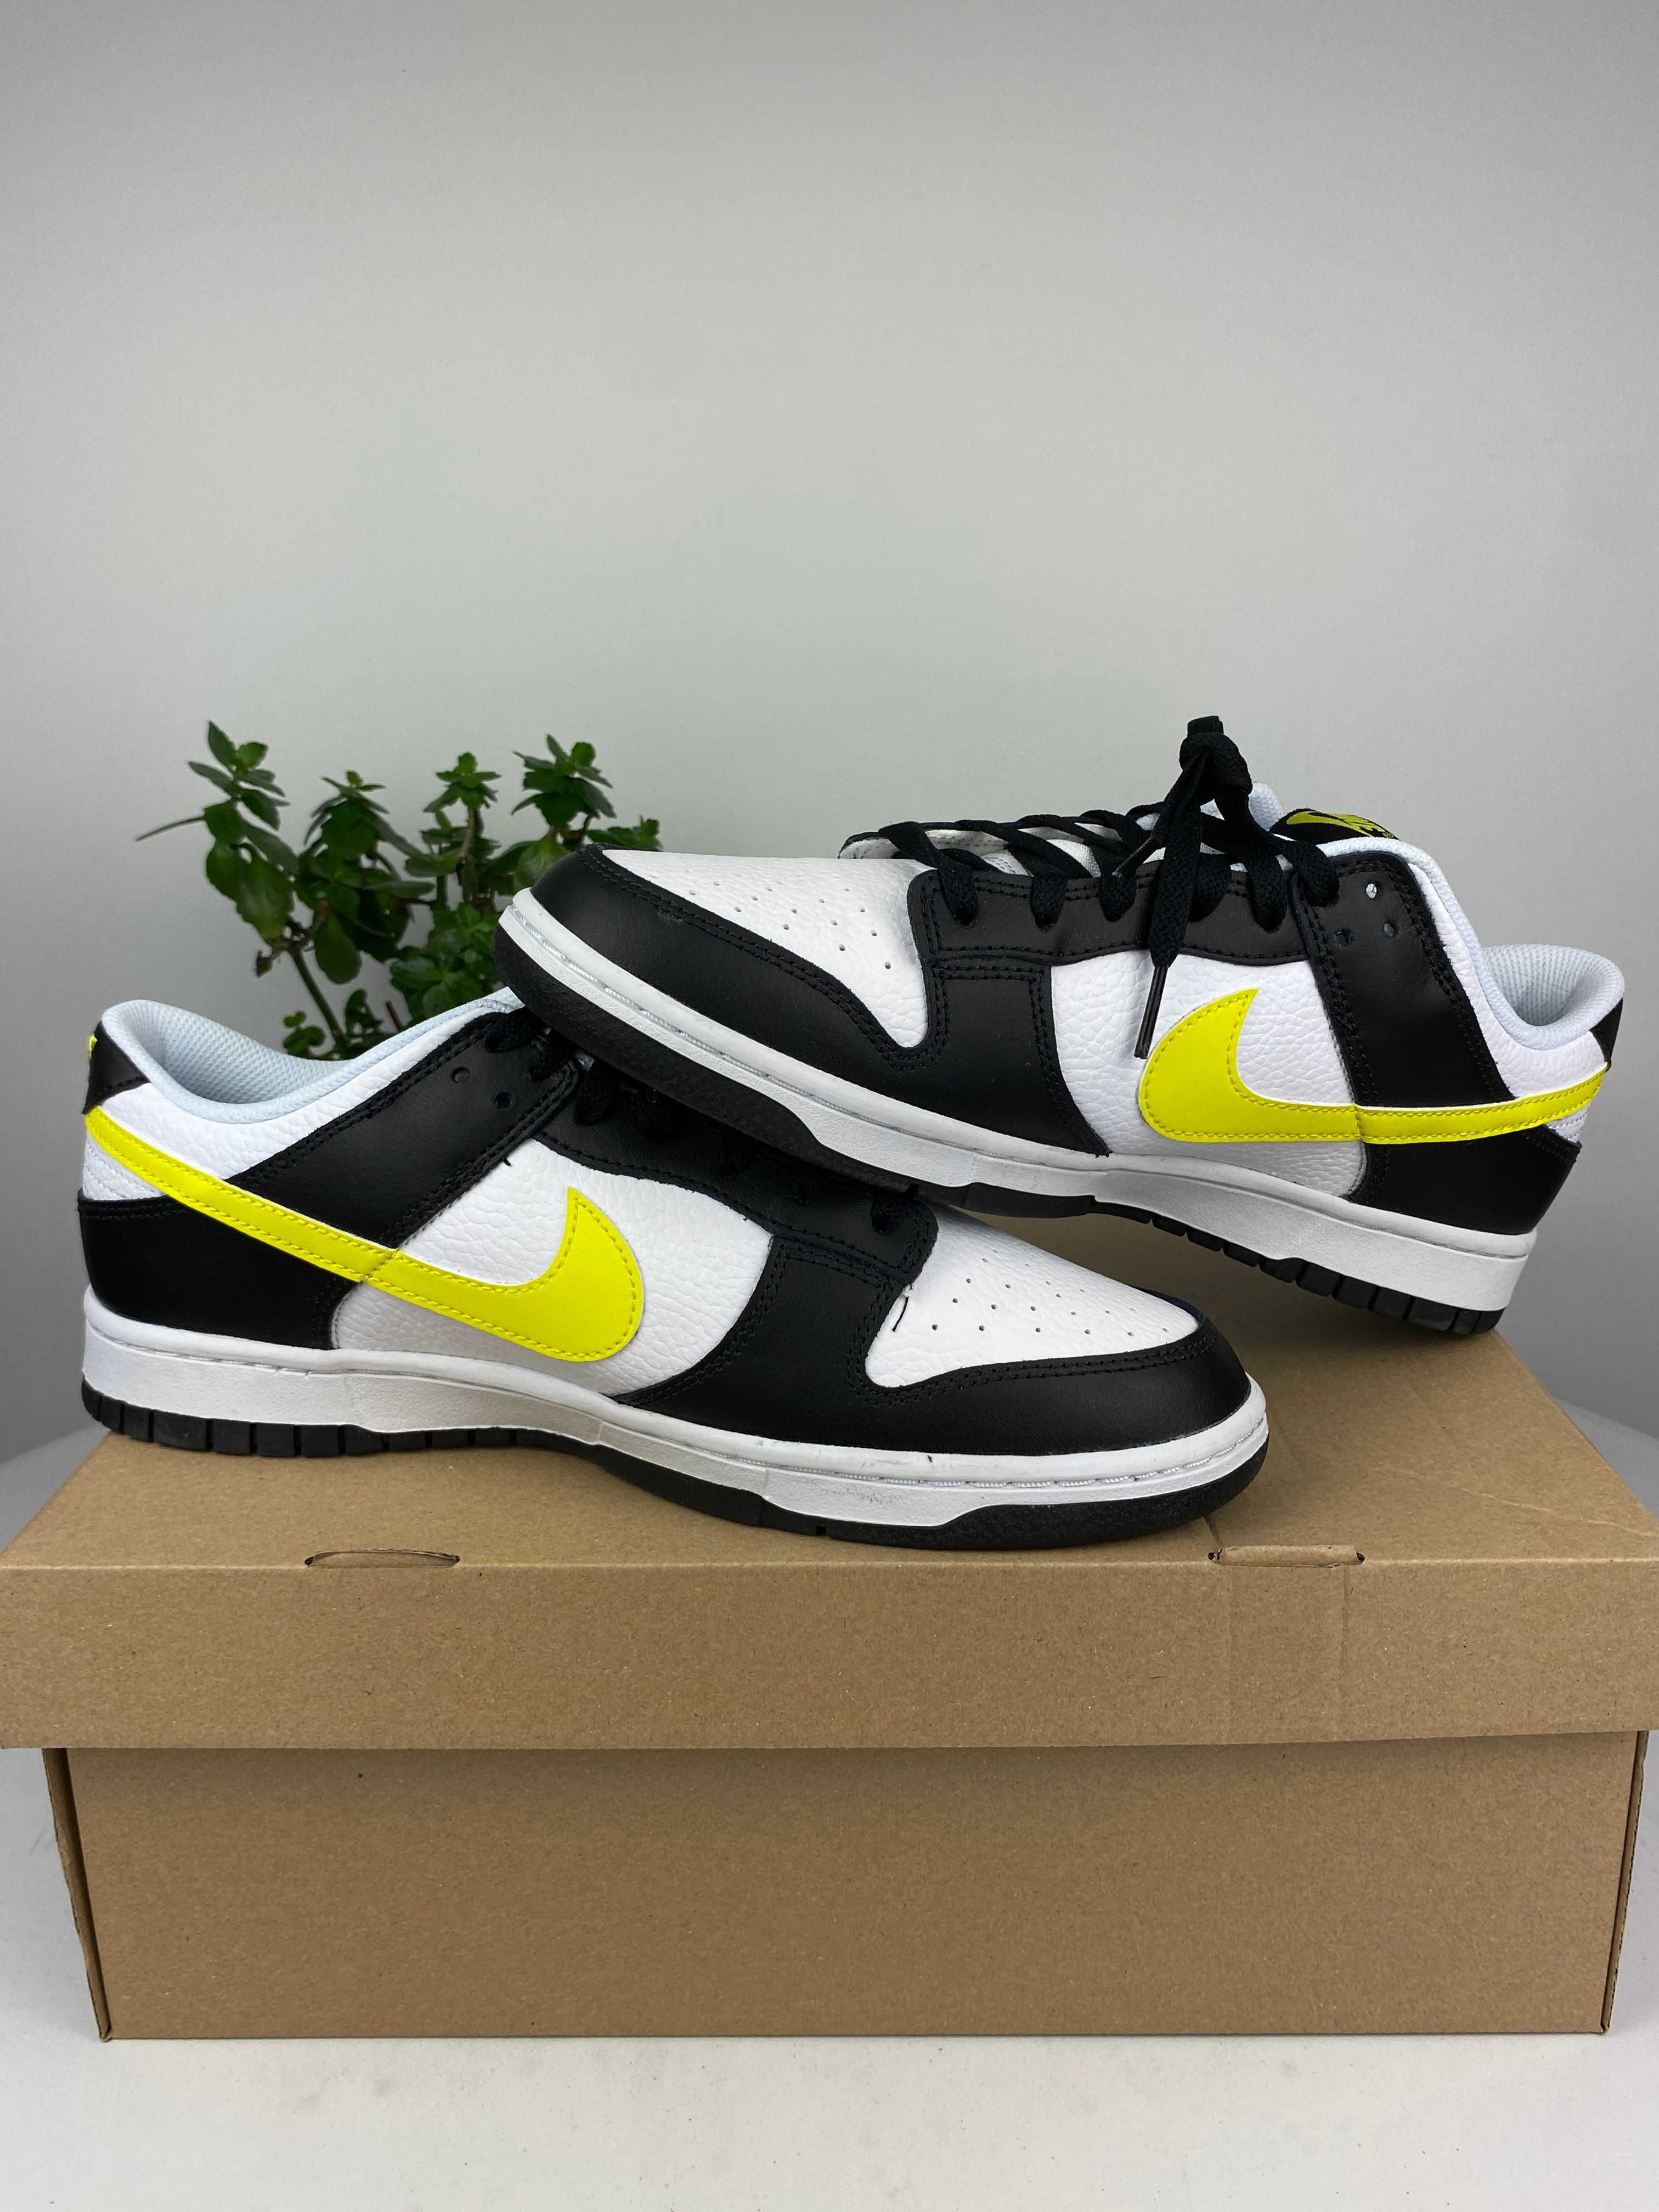 białe czarne żółte buty nike dunk low niskie r. 44,5 n154a